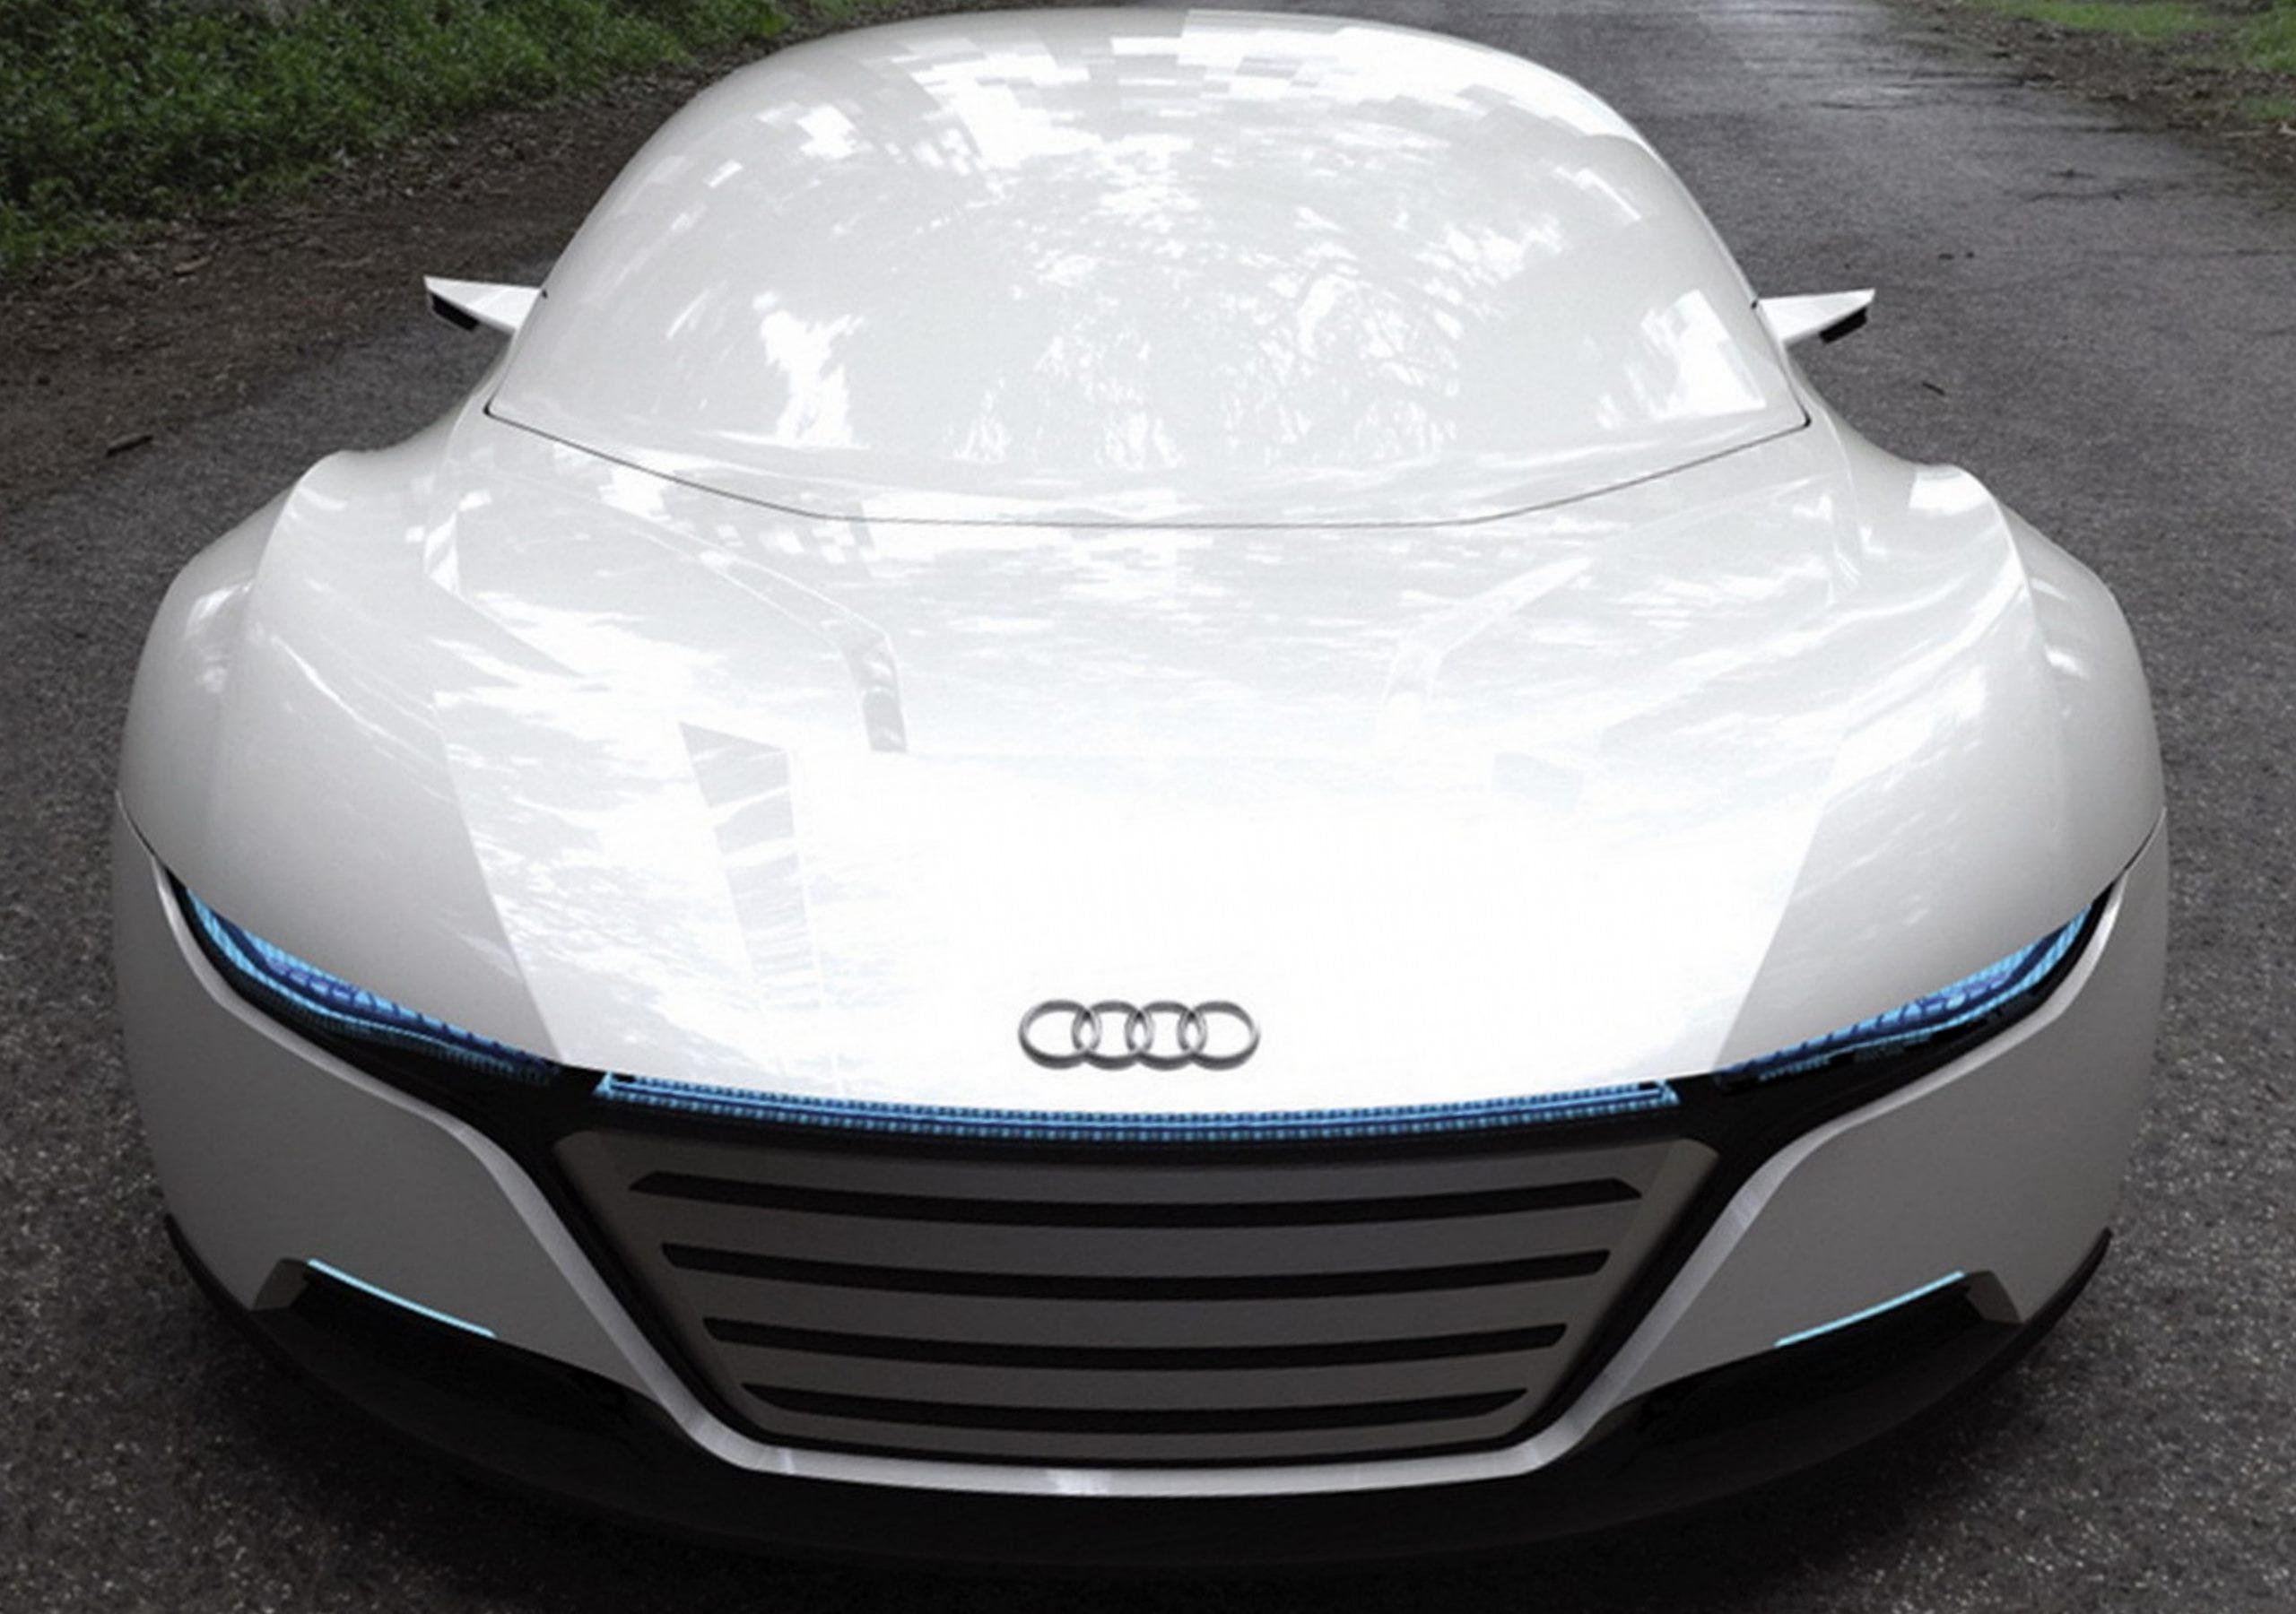 Audi A9 Concept Car Wallpaper